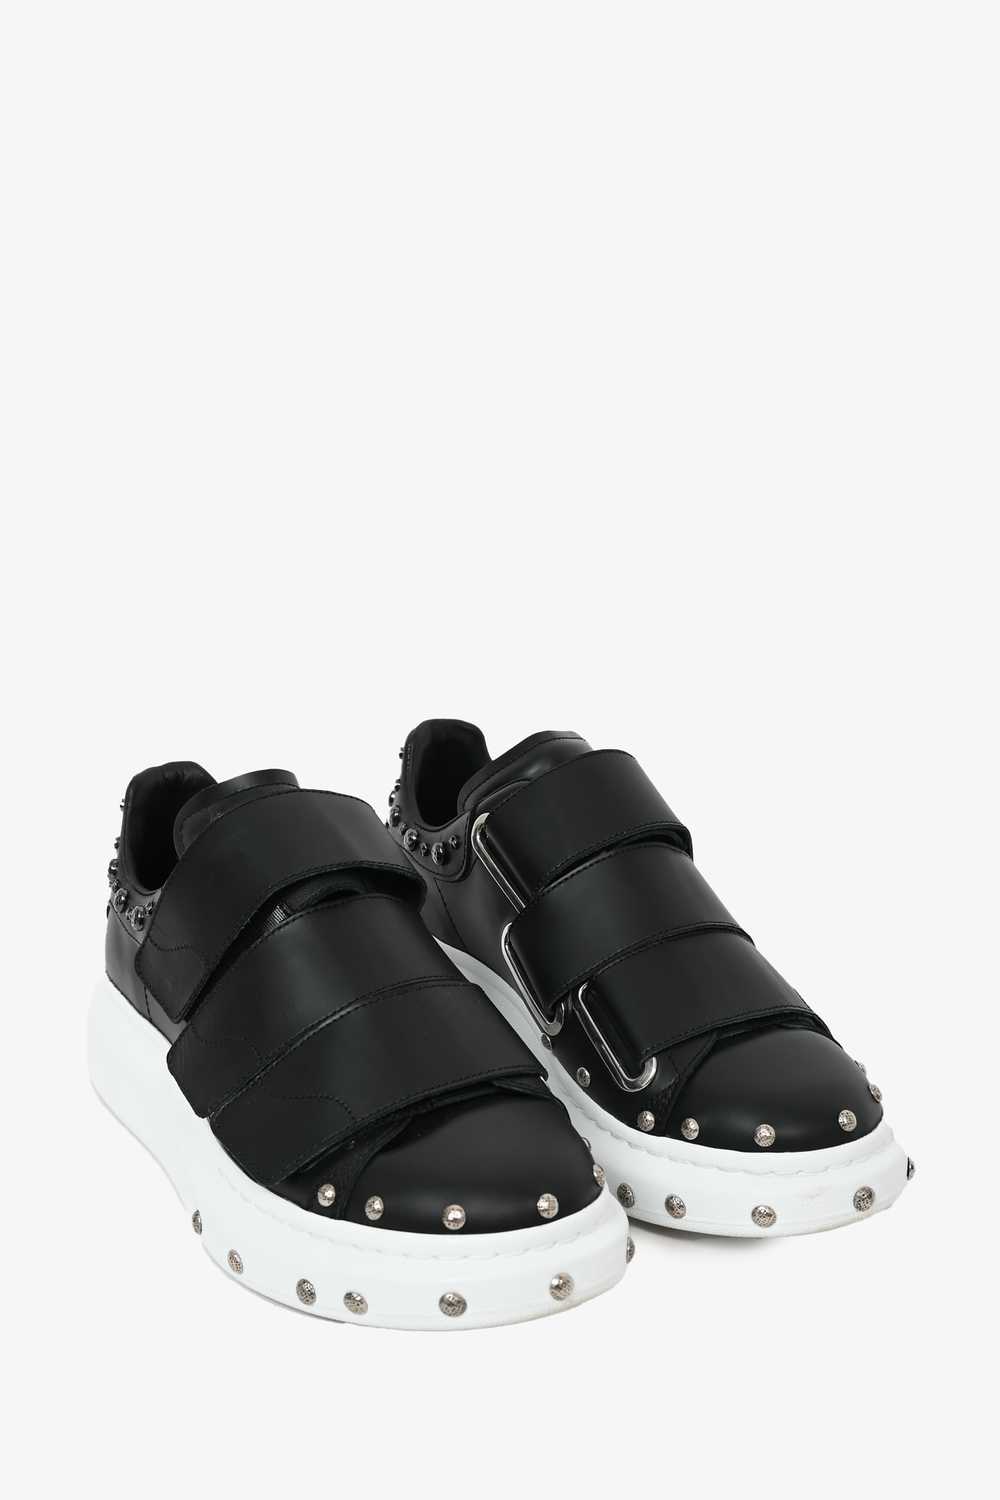 Alexander McQueen Black Leather Velcro Sneakers S… - image 2